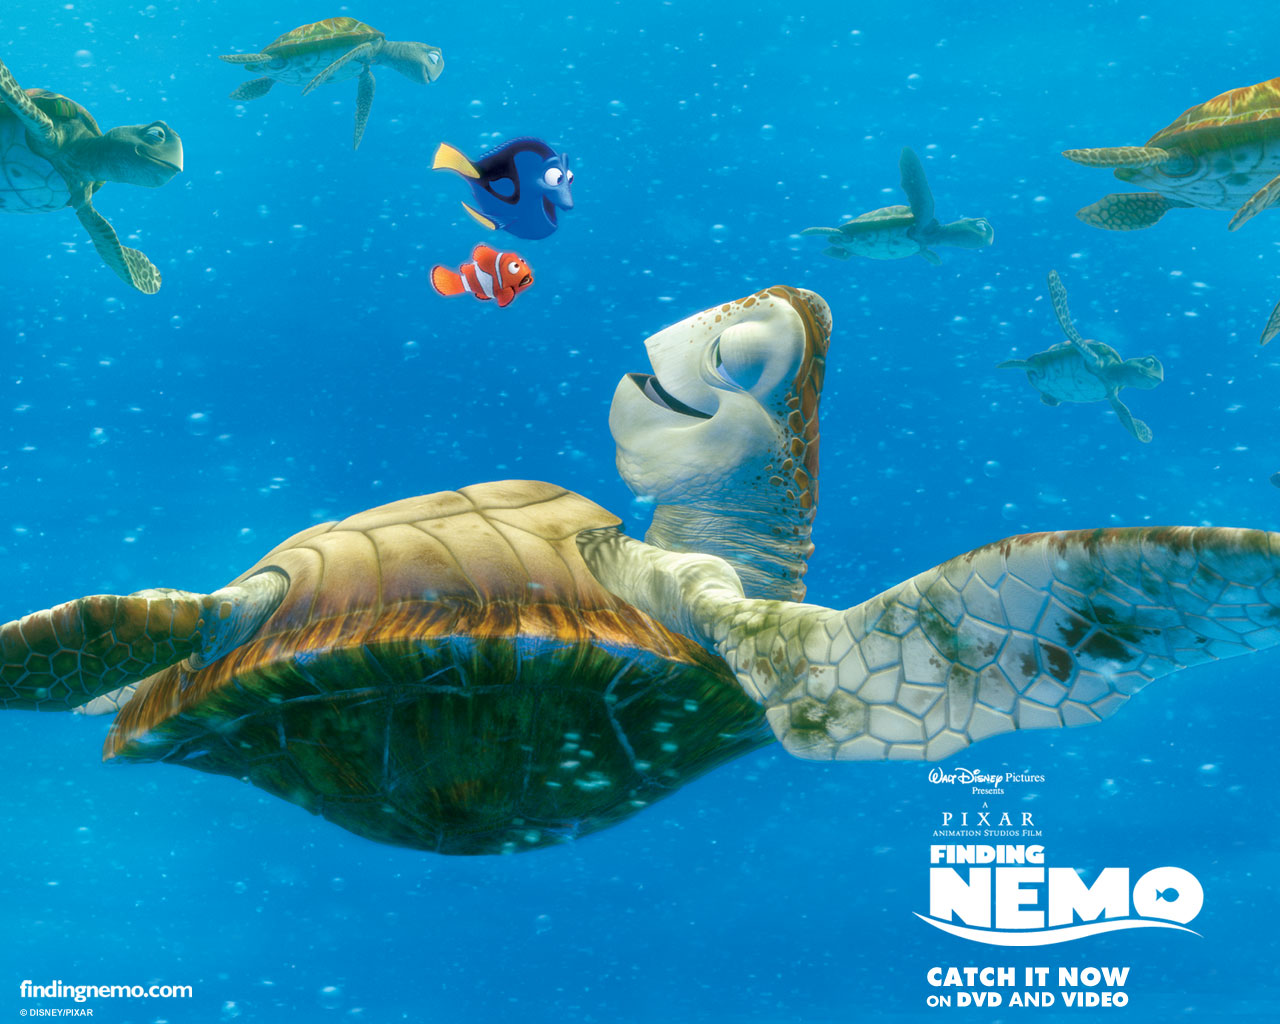 "Finding Nemo" desktop wallpaper number 2 (1280 x 1024 pixels)